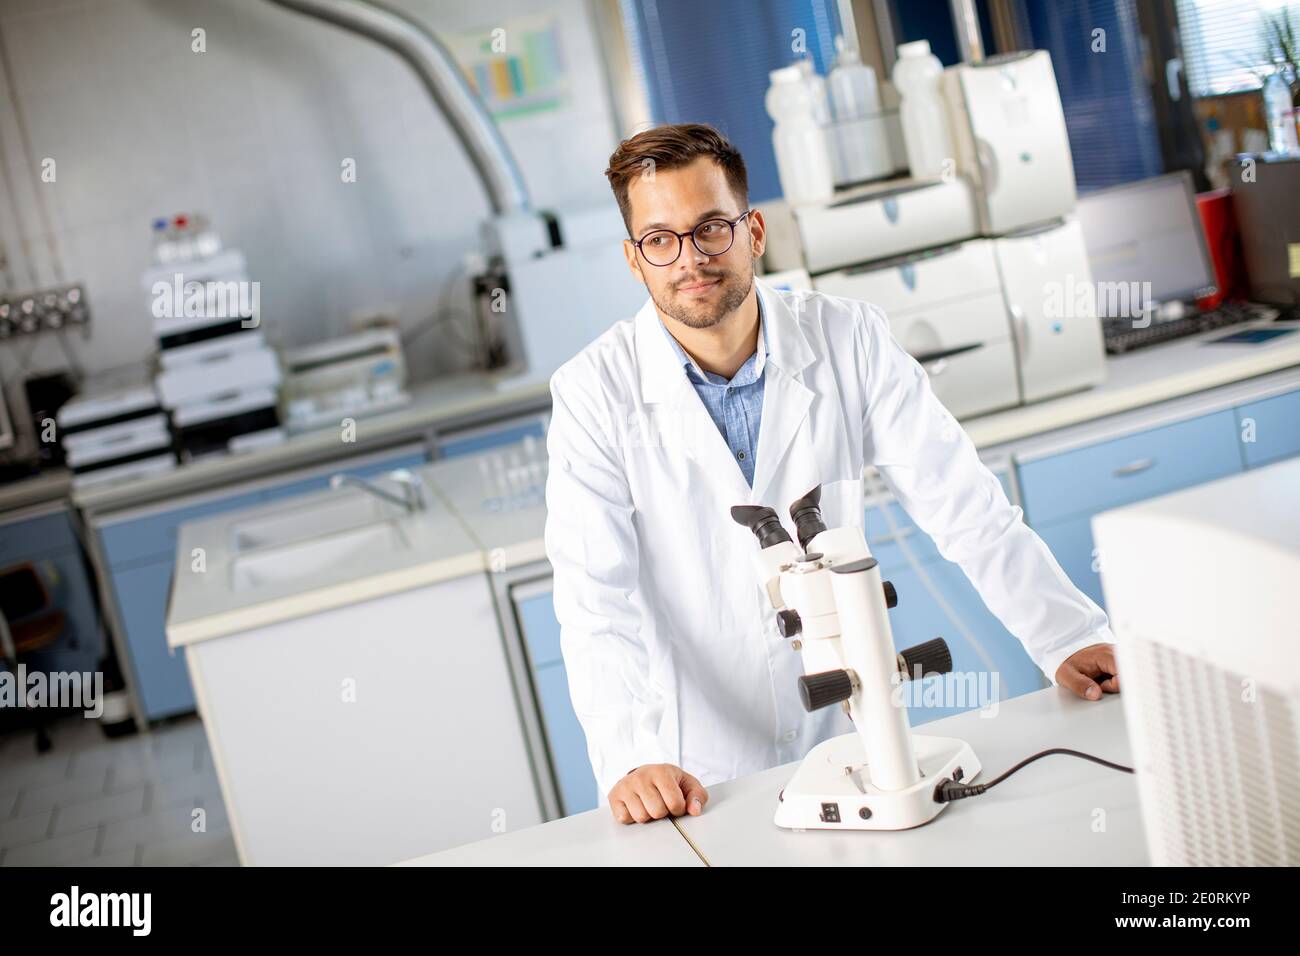 Hübscher junger Wissenschaftler im weißen Laborkittel, der mit binokular arbeitet Mikroskop im Labor der Materialwissenschaft Stockfoto